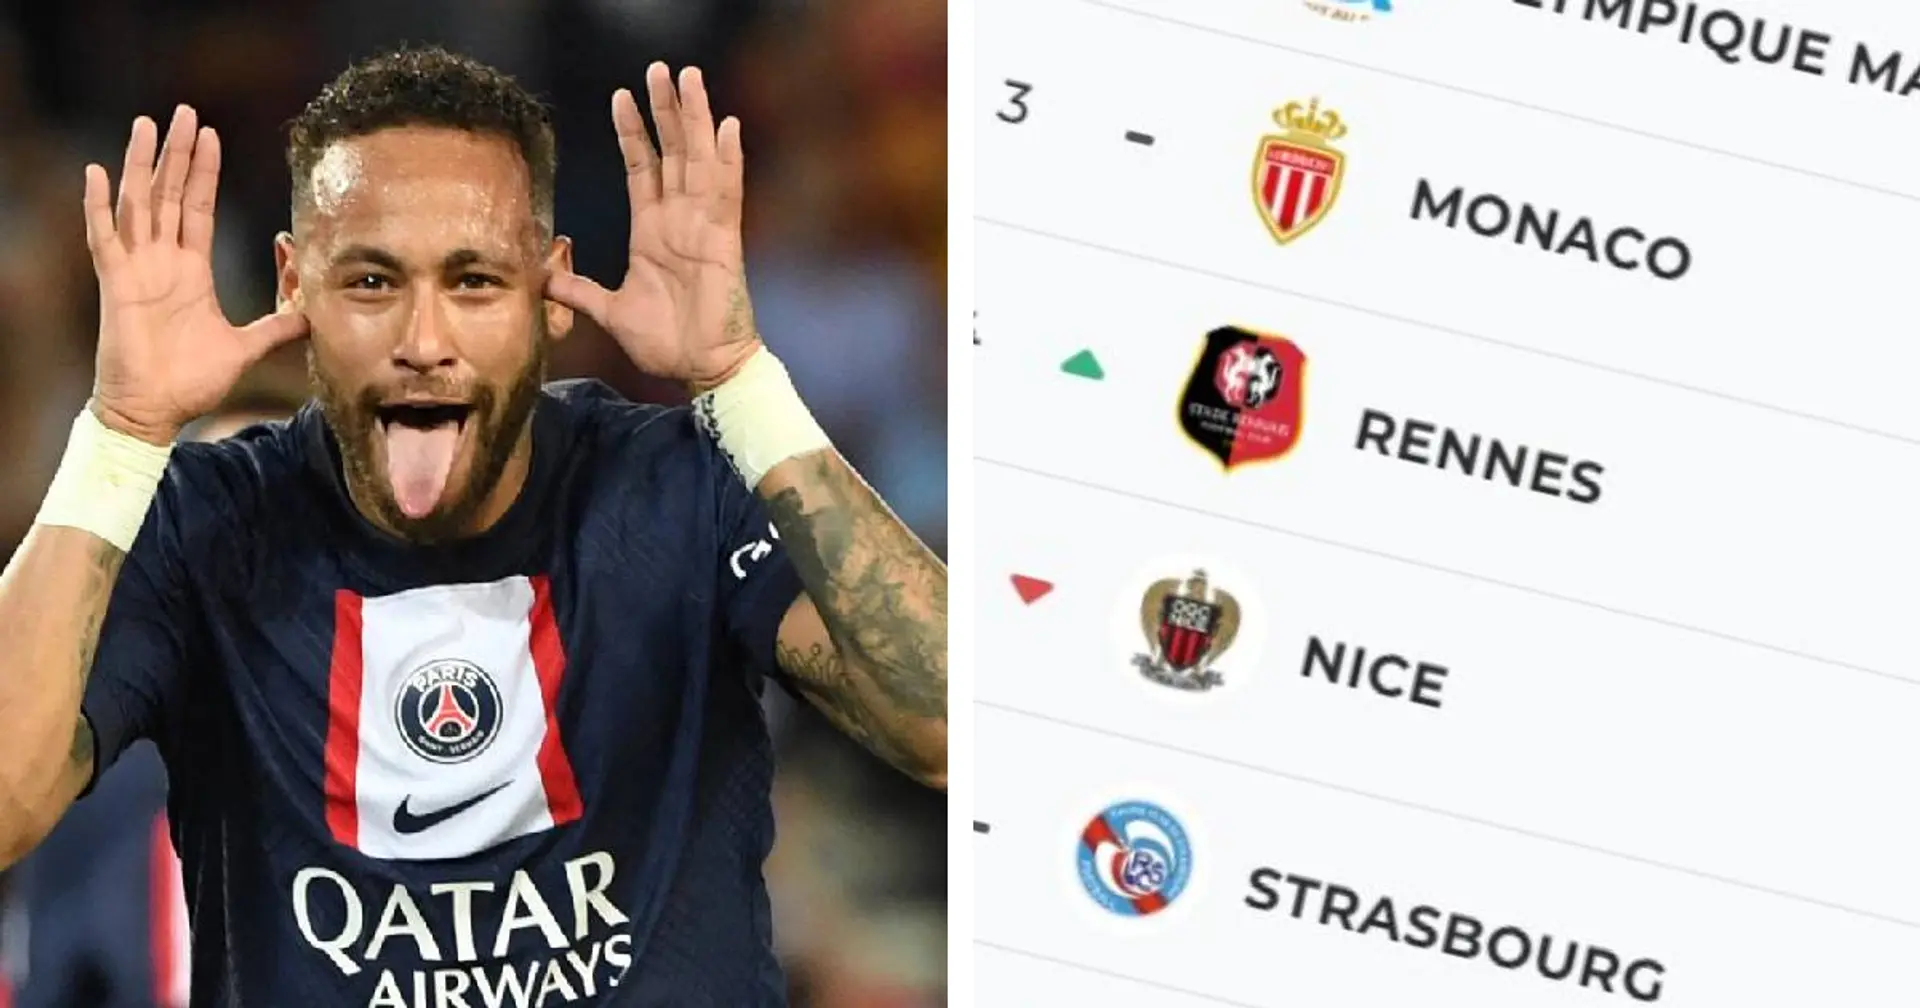 Le PSG seul en tête de la Ligue 1 - classement et résultats détaillés après la deuxième journée